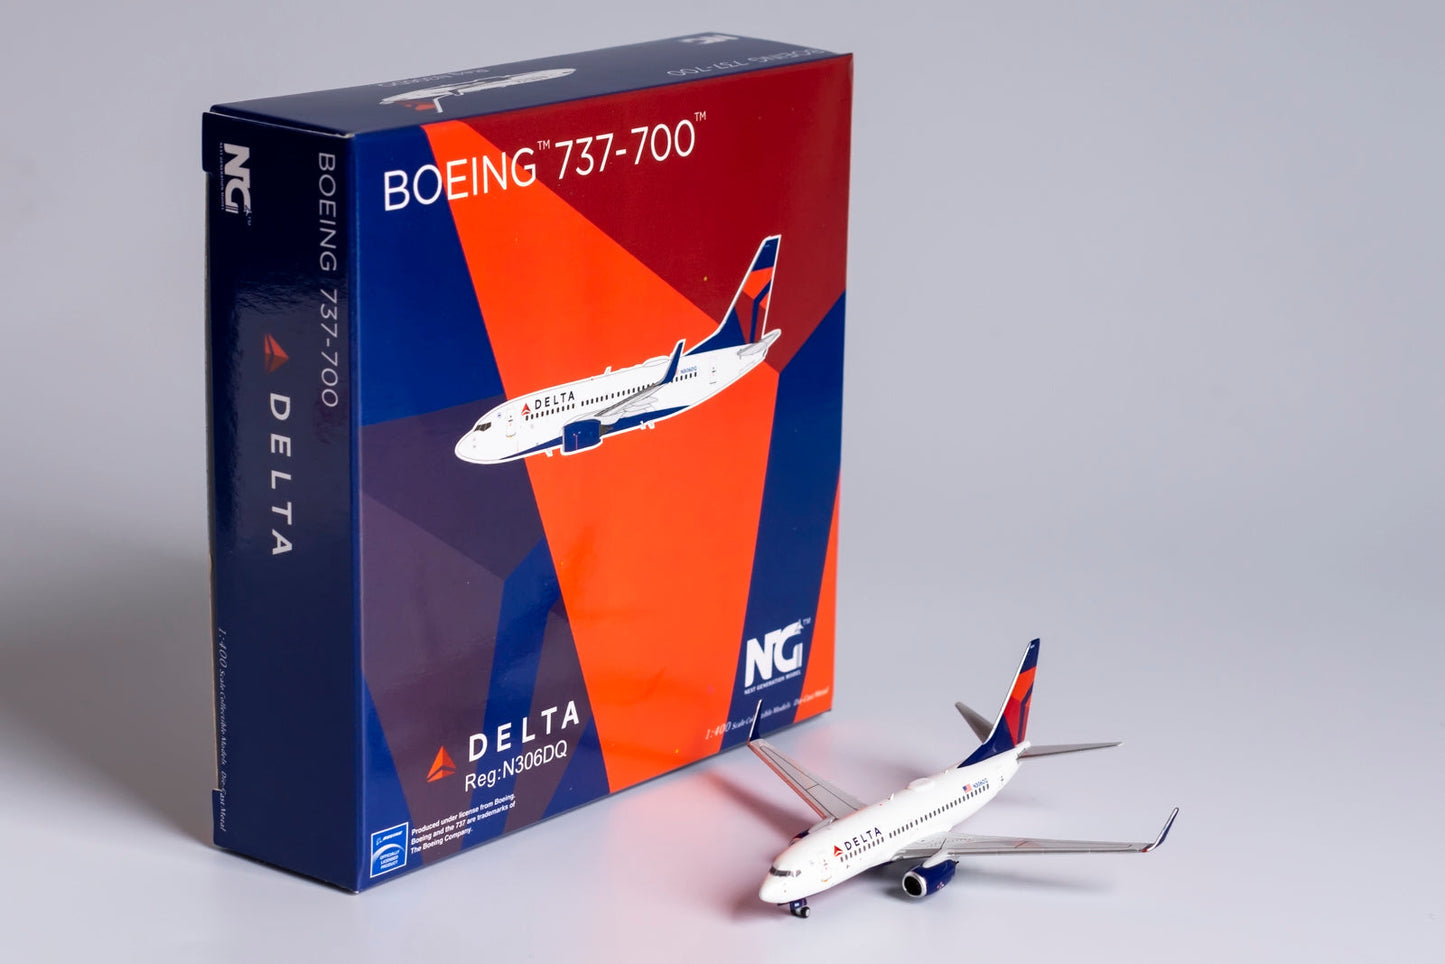 1/400 Delta Airlines B 737-700/w NG Models 77019 *Broken front landing gear door*